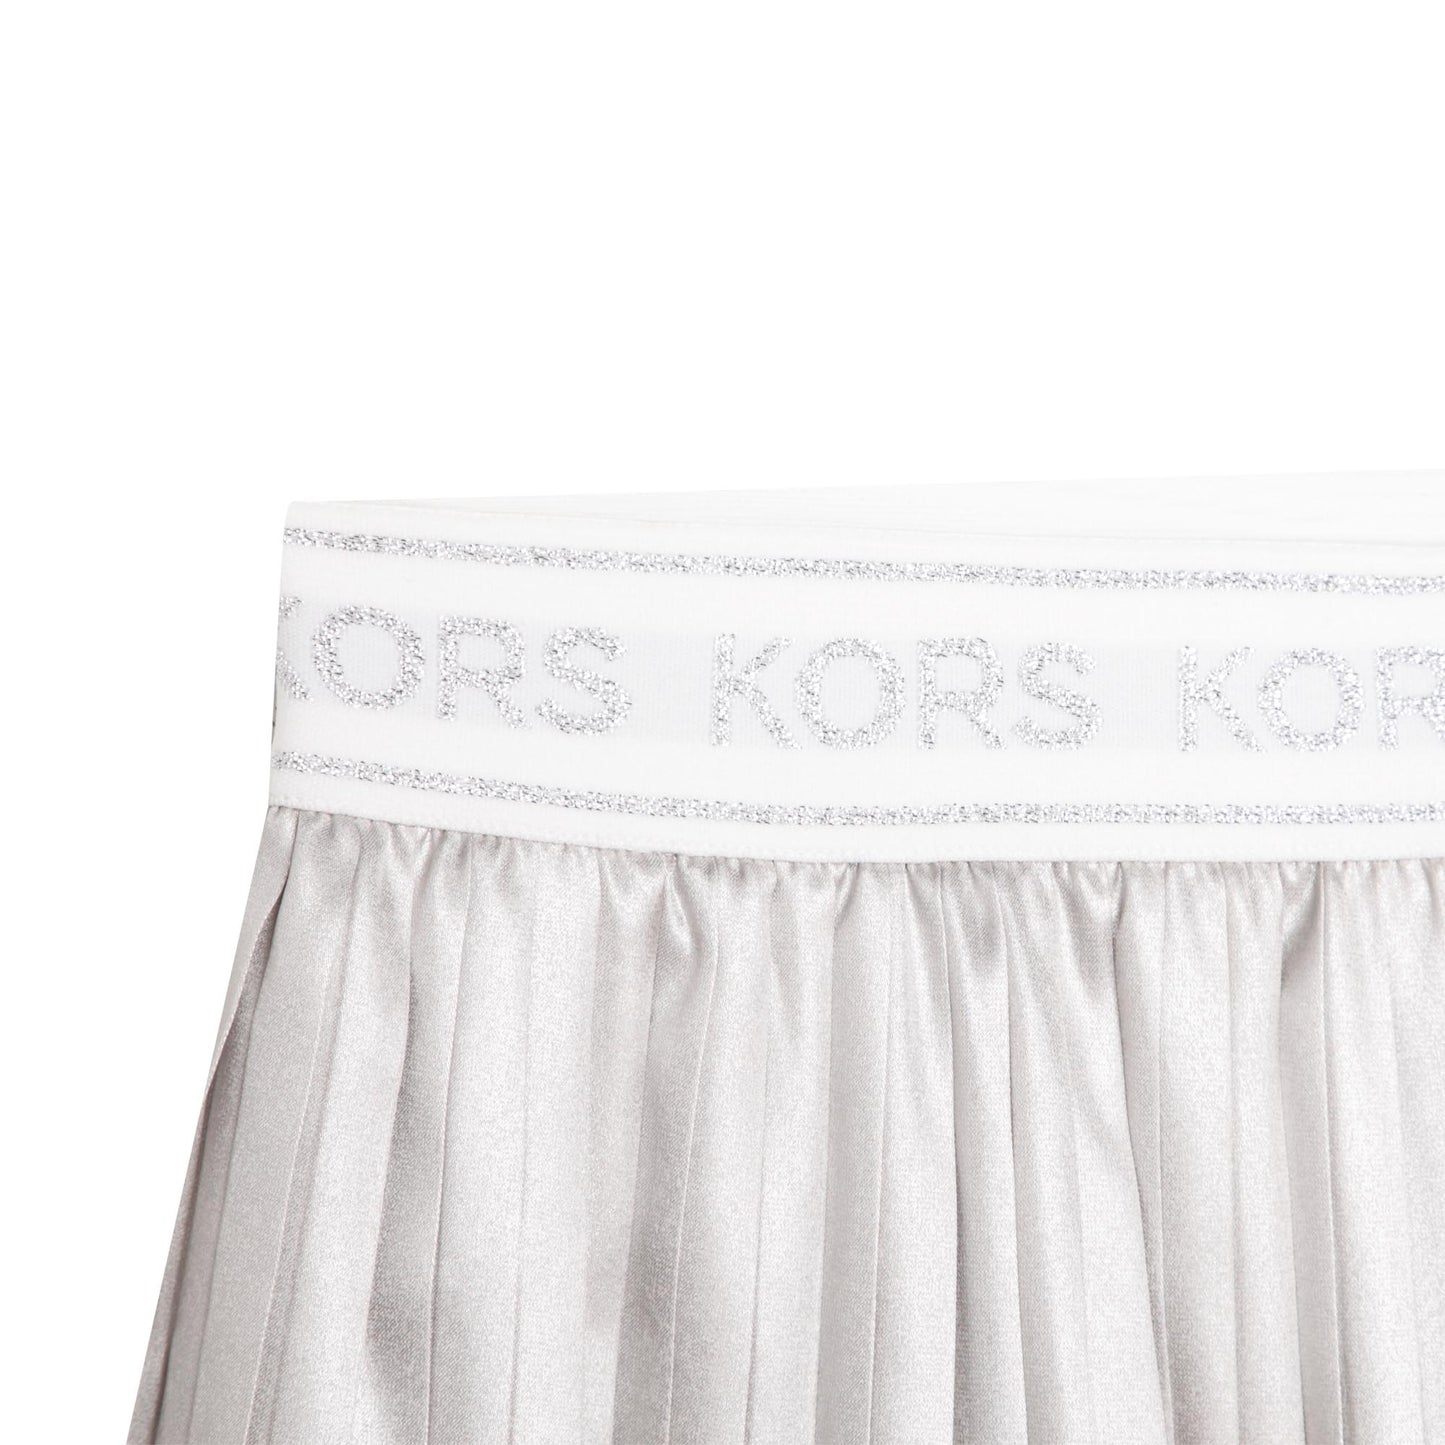 Michael Kors Midi Metallic Pleated Skirt _Silver R13120-16